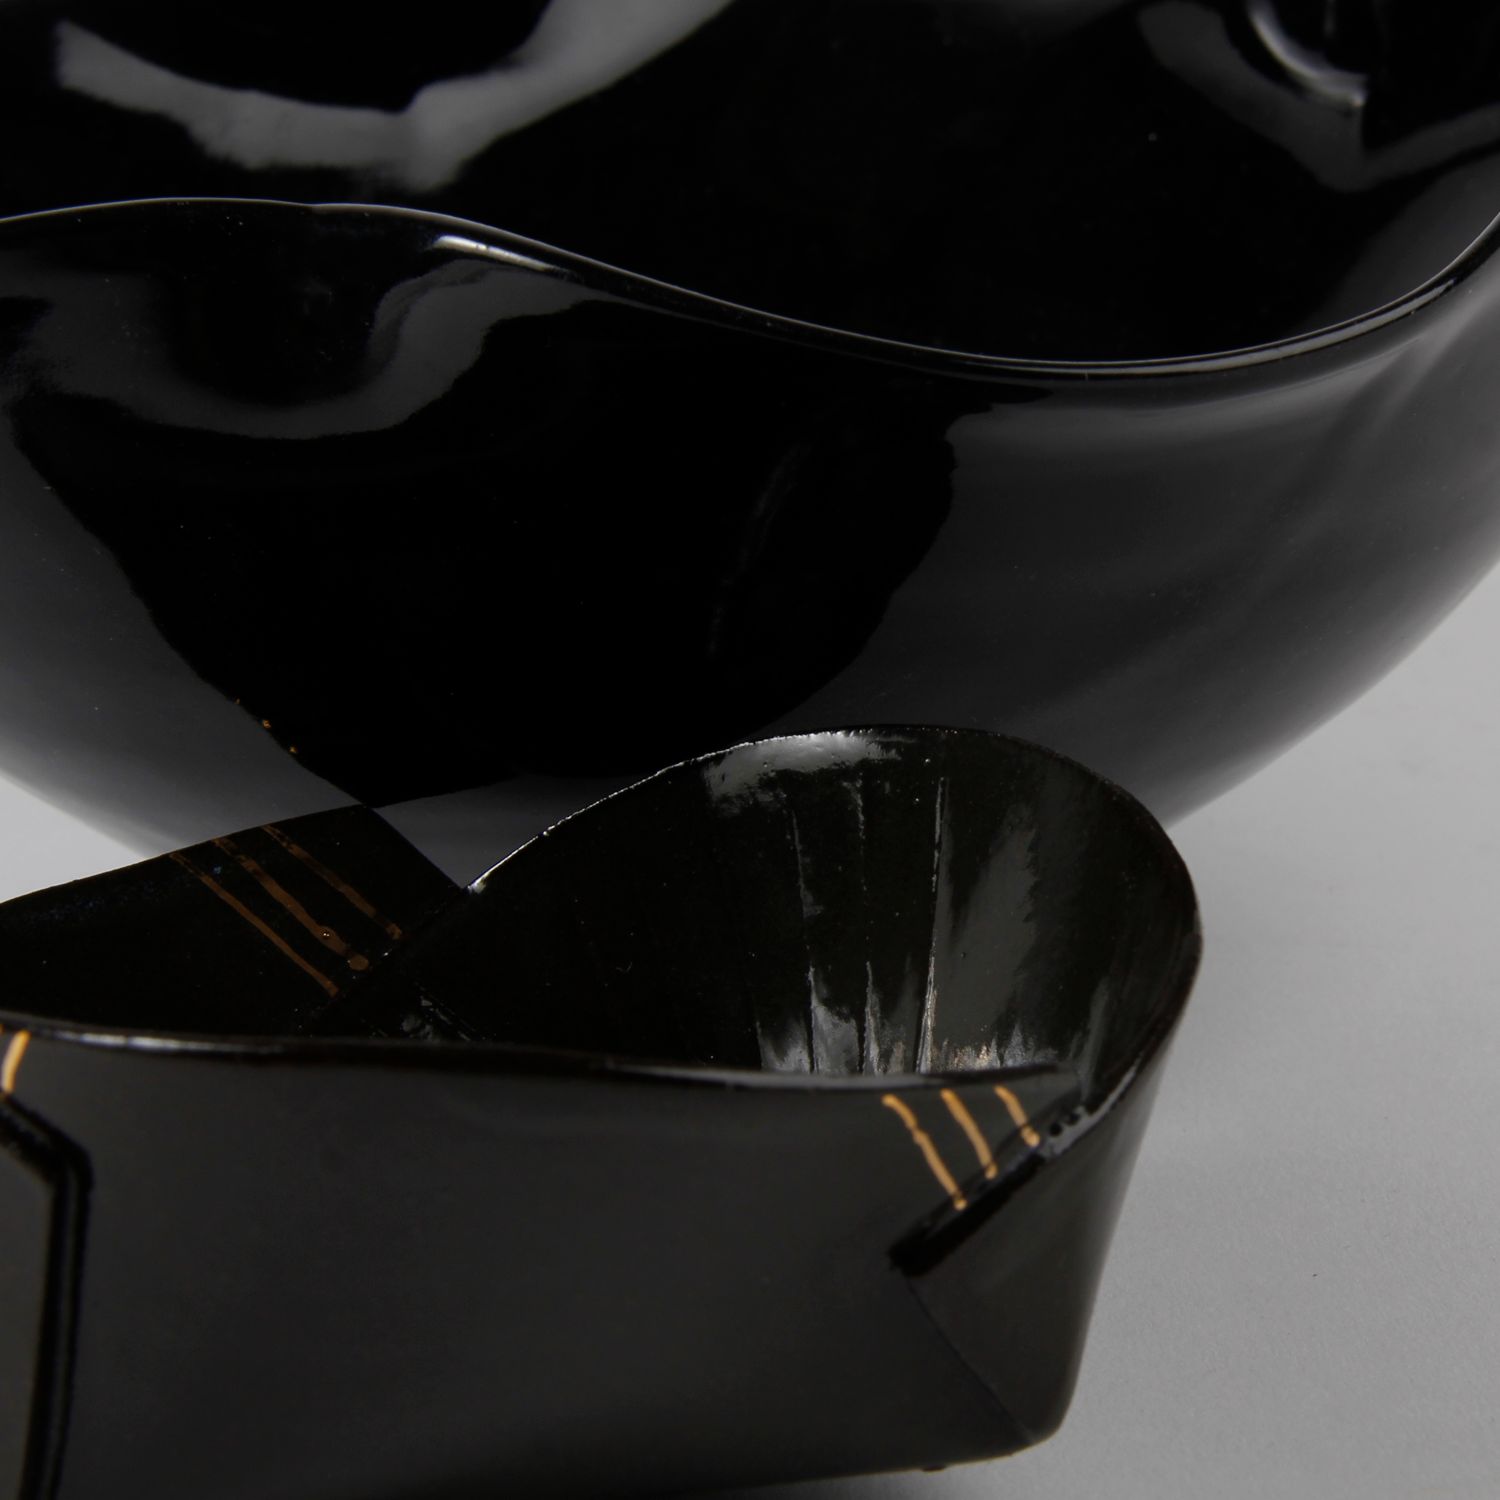 Natalie Waddell: X Large Black Folded Bowl Product Image 3 of 6